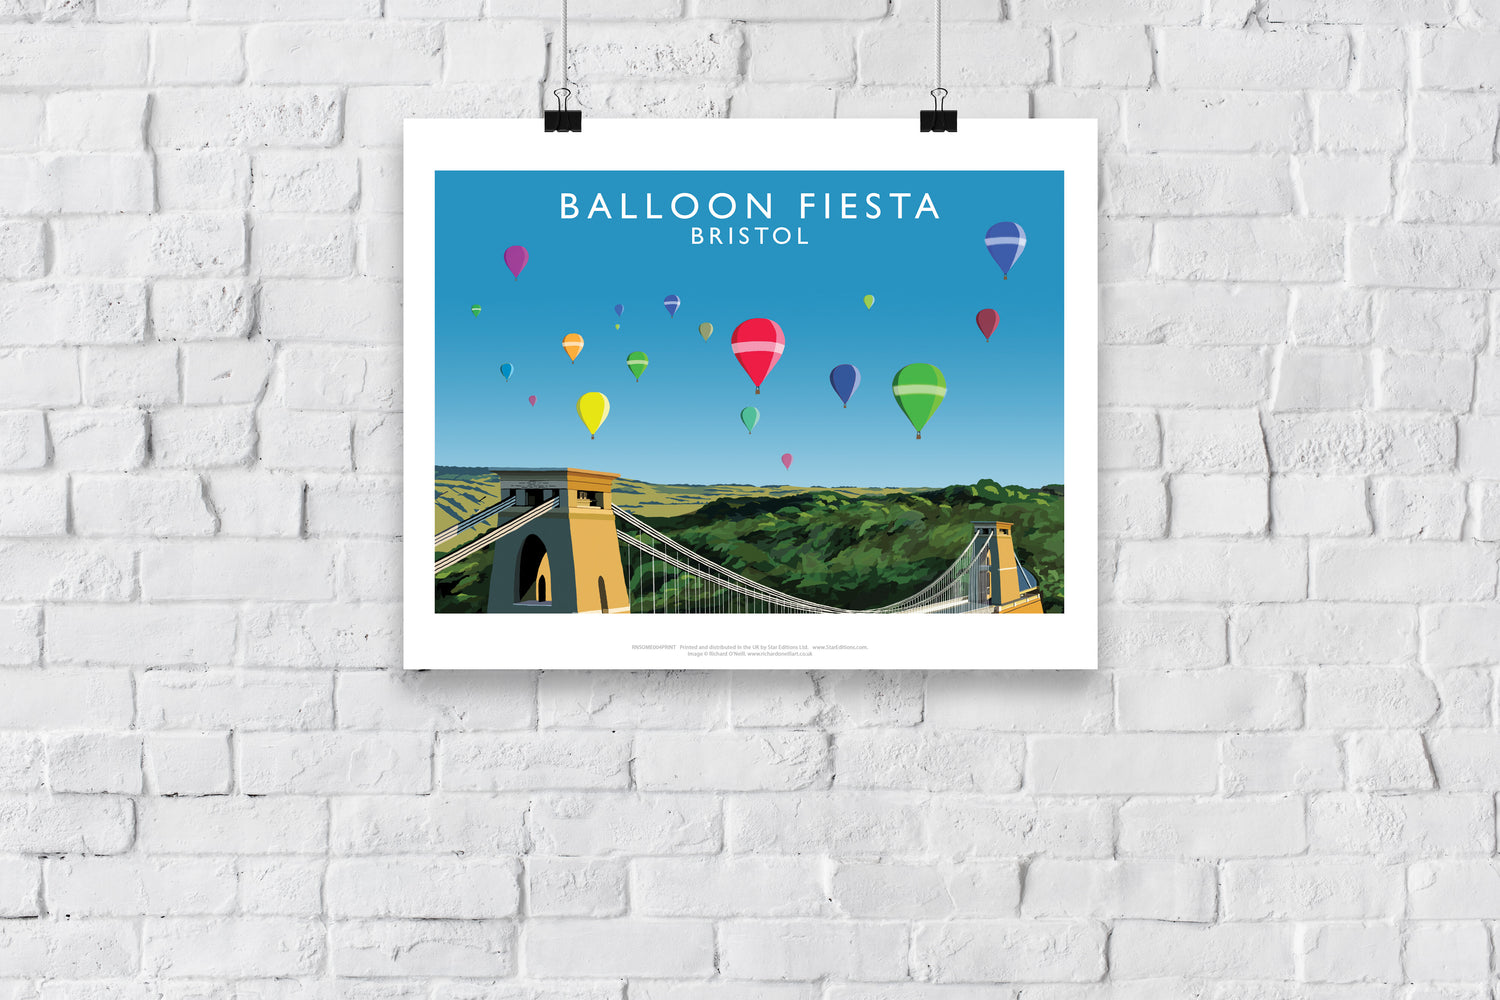 Balloon Fiesta, Bristol - Art Print